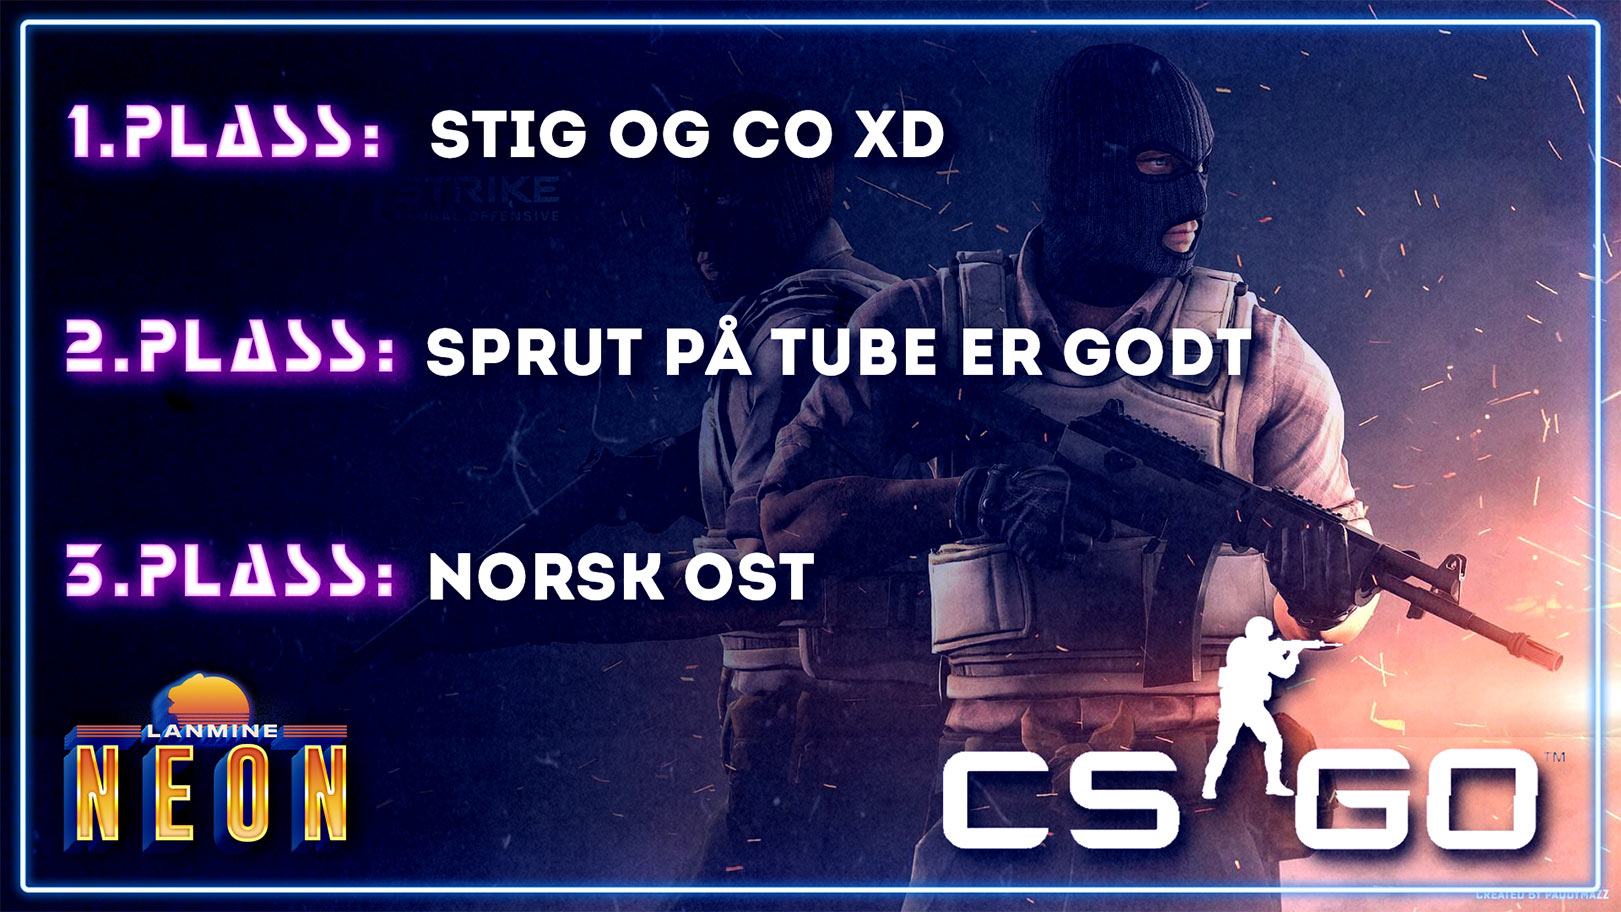 Liste over vinnere av CS:GO turneringen på LANmine 32 NEON. 1. plass til Stig og co, 2. plass til Sprut på tube er godt. 3. plass til Norsk ost.